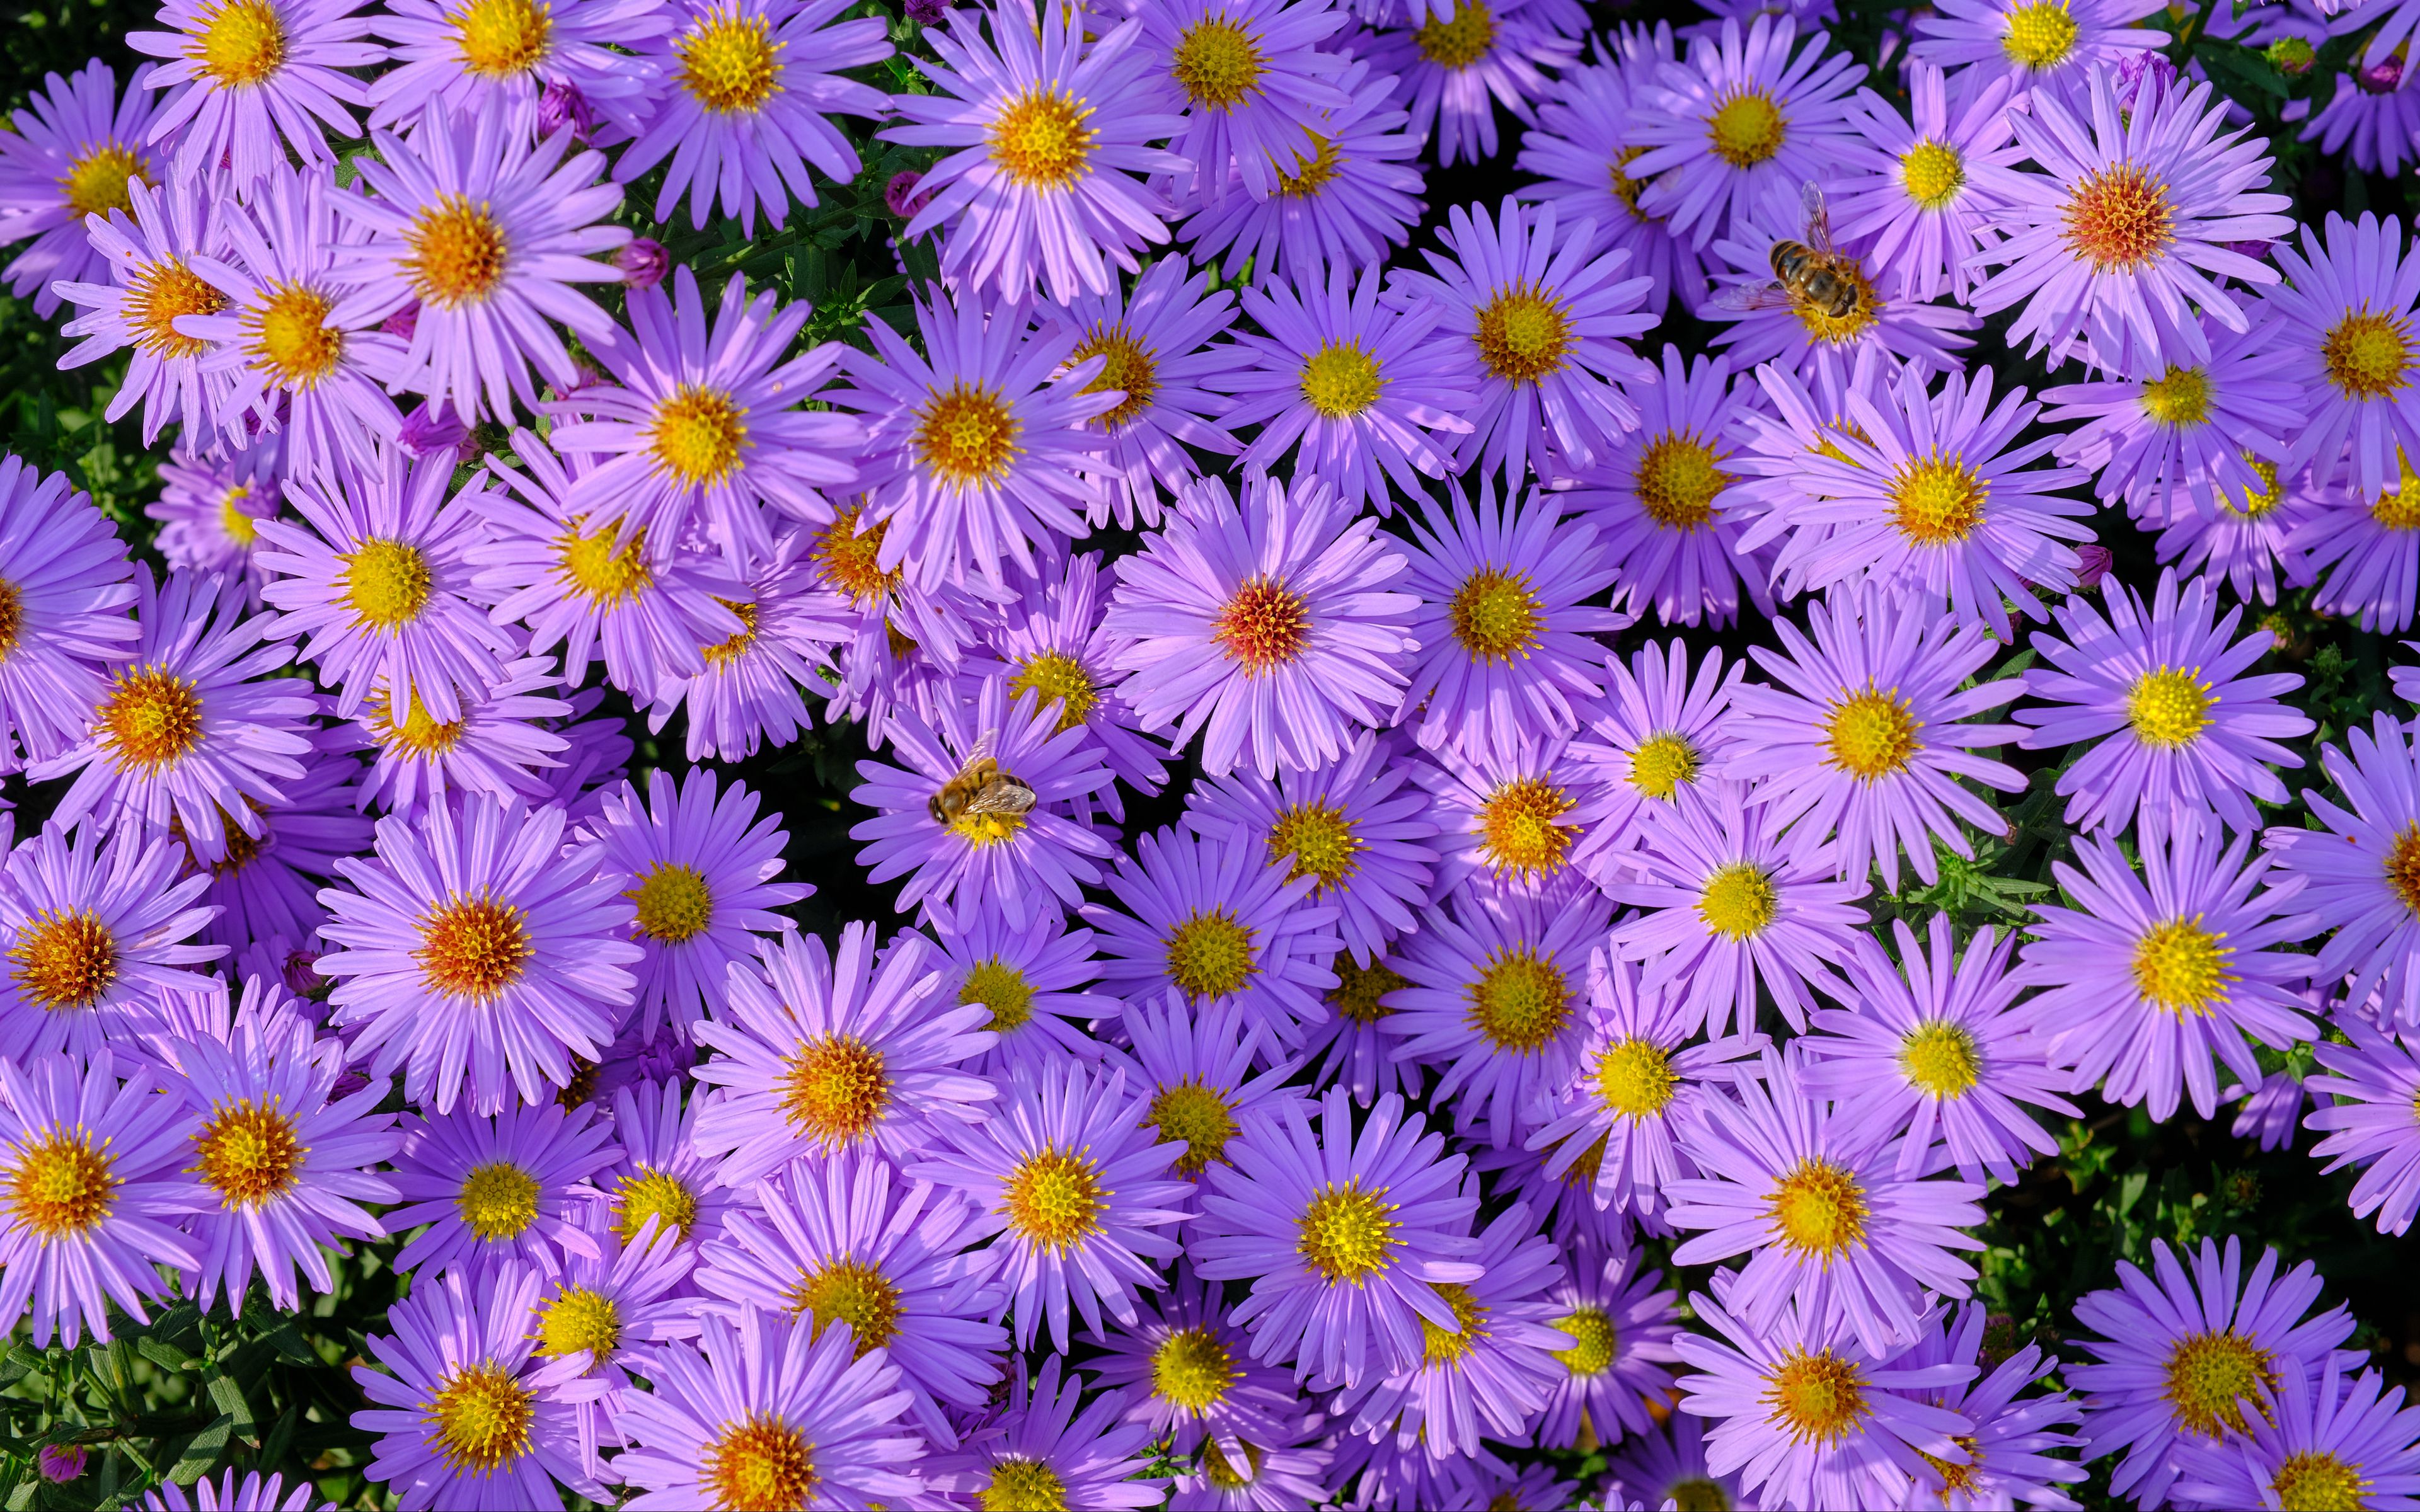 Field of purple flowers Wallpaper 4k Ultra HD